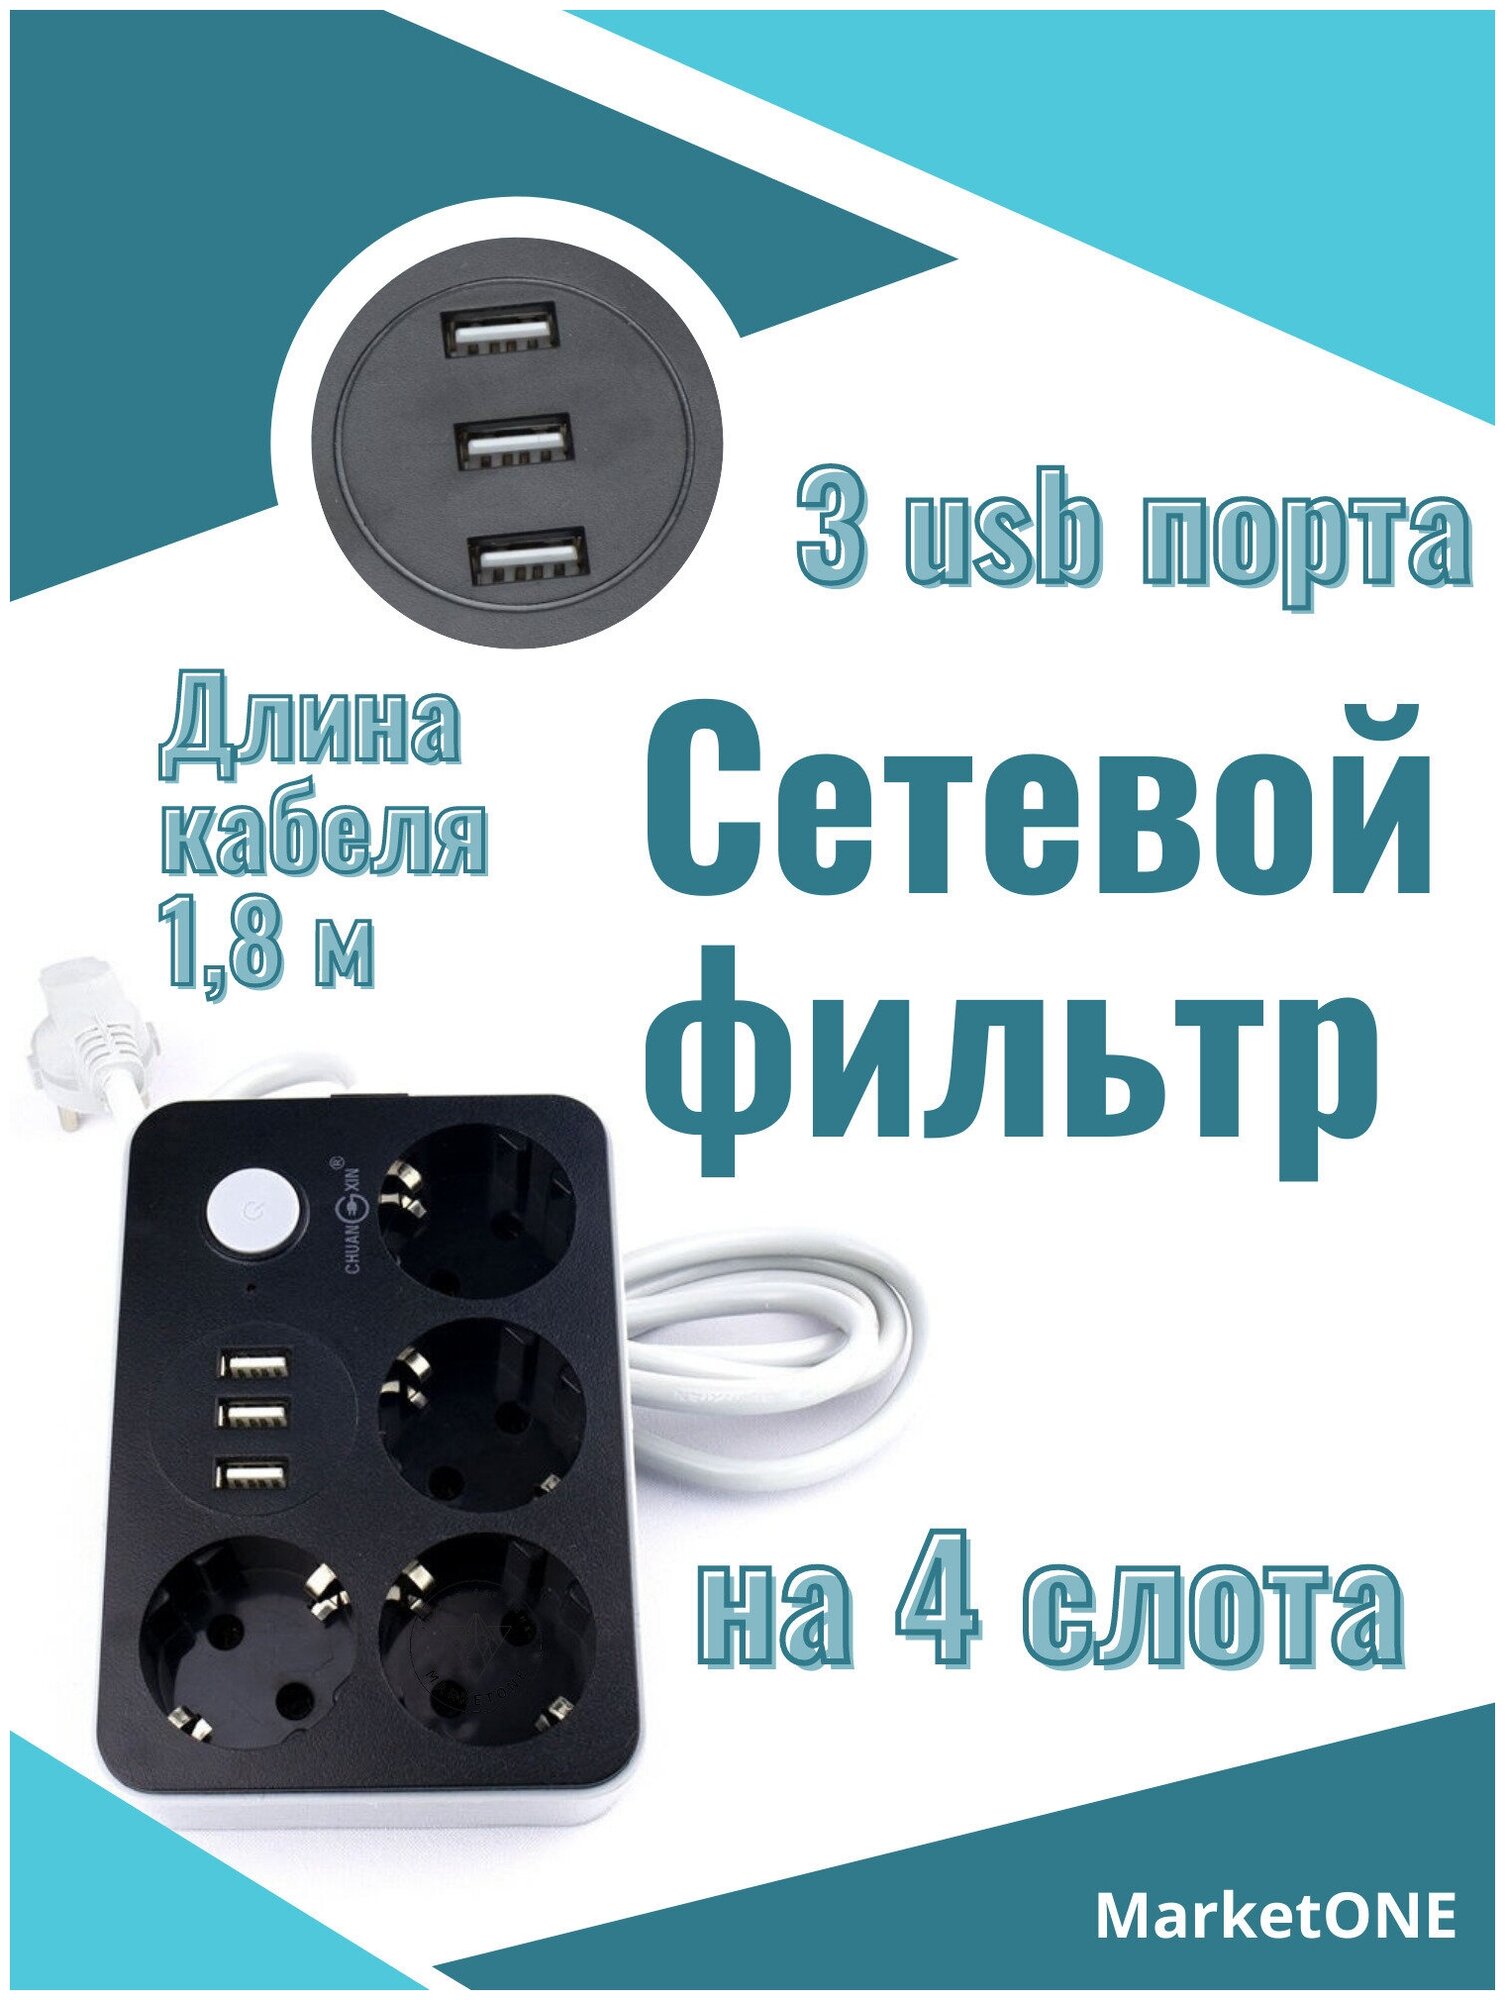 Сетевой фильтр с 3 USB, 1,8 м / Удлинитель 1,8 м. 4 порта и 3 usb-слота / CX-U314